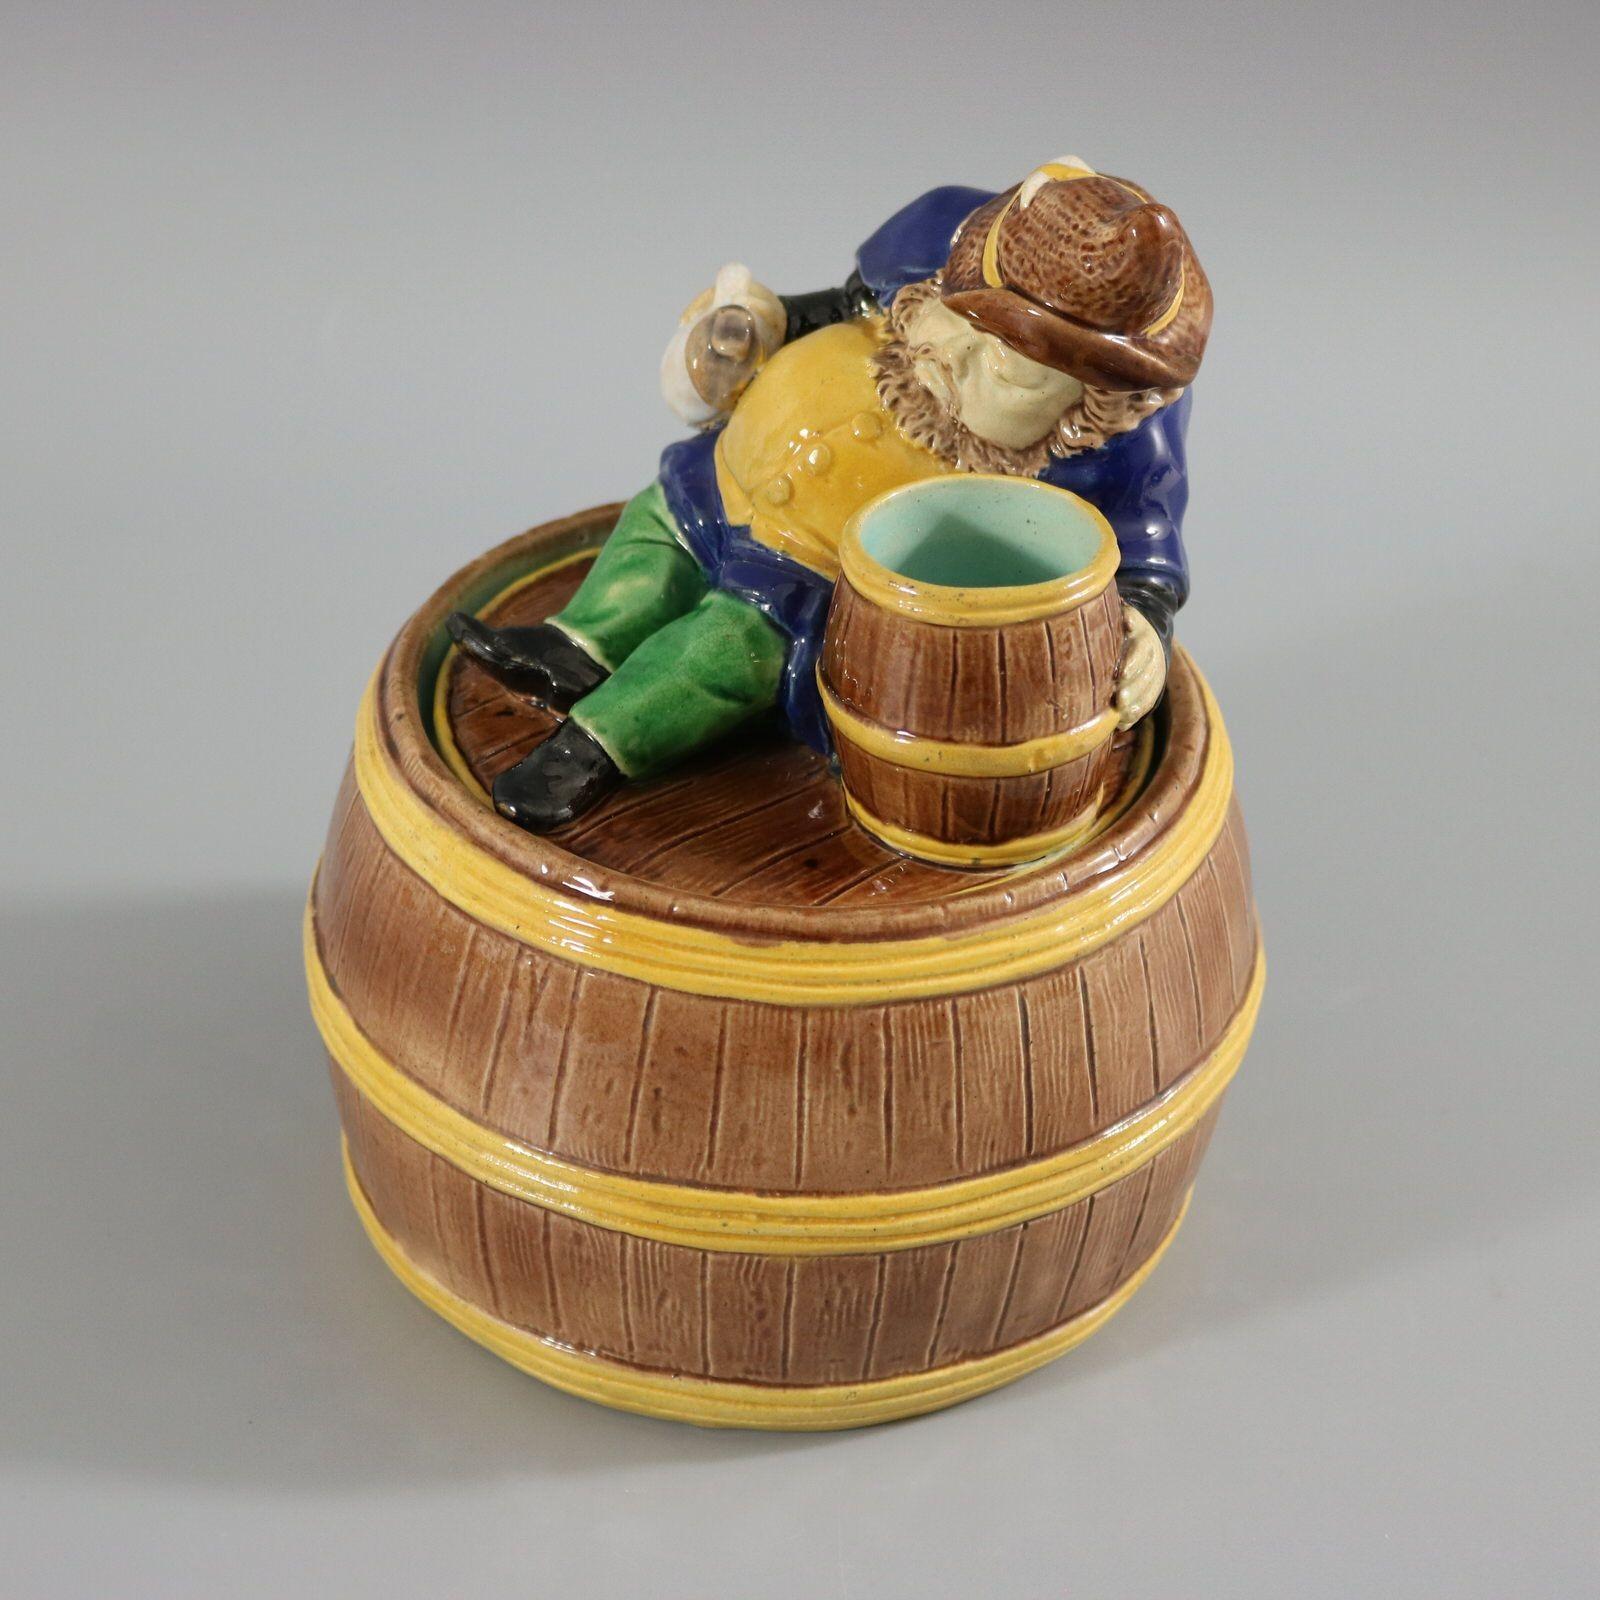 Pot et couvercle en majolique anglaise non identifiés représentant un gnome (ou un nain) allongé à côté d'un tonneau de bière, avec une cruche dans sa main droite. La base a la forme d'un tonneau. Coloration : le brun, le jaune, le bleu cobalt, sont